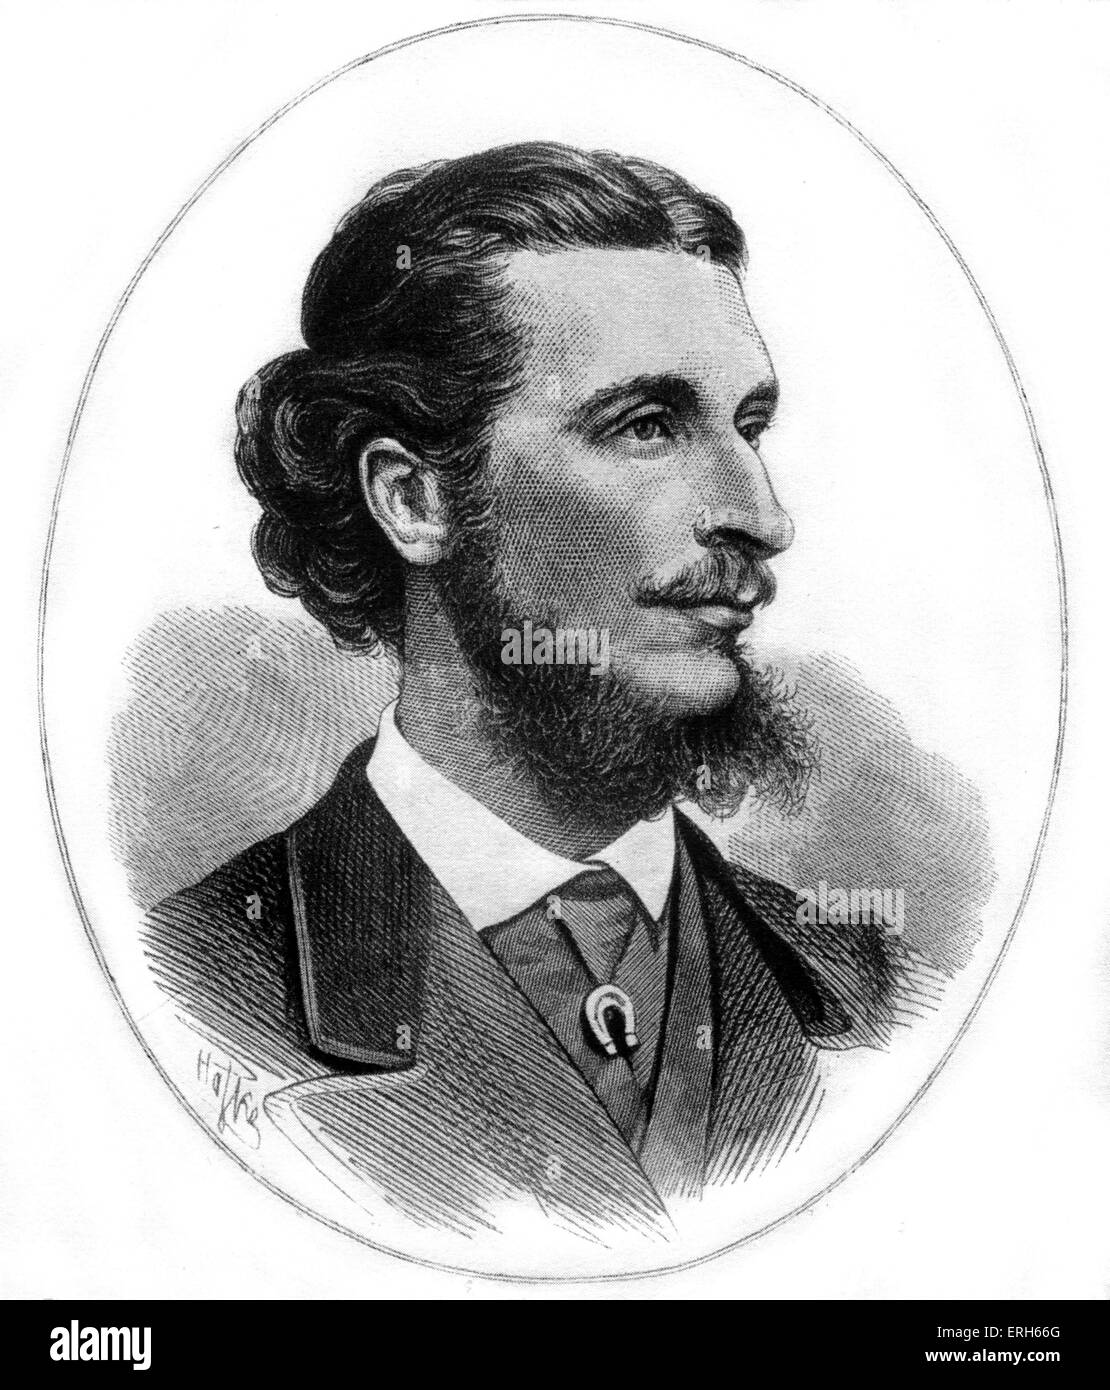 Albert Apponyi - portrait - homme politique hongrois, amis écrivains avec Liszt et Wagner - 29 mai 1846 - 7 février 1933. Banque D'Images